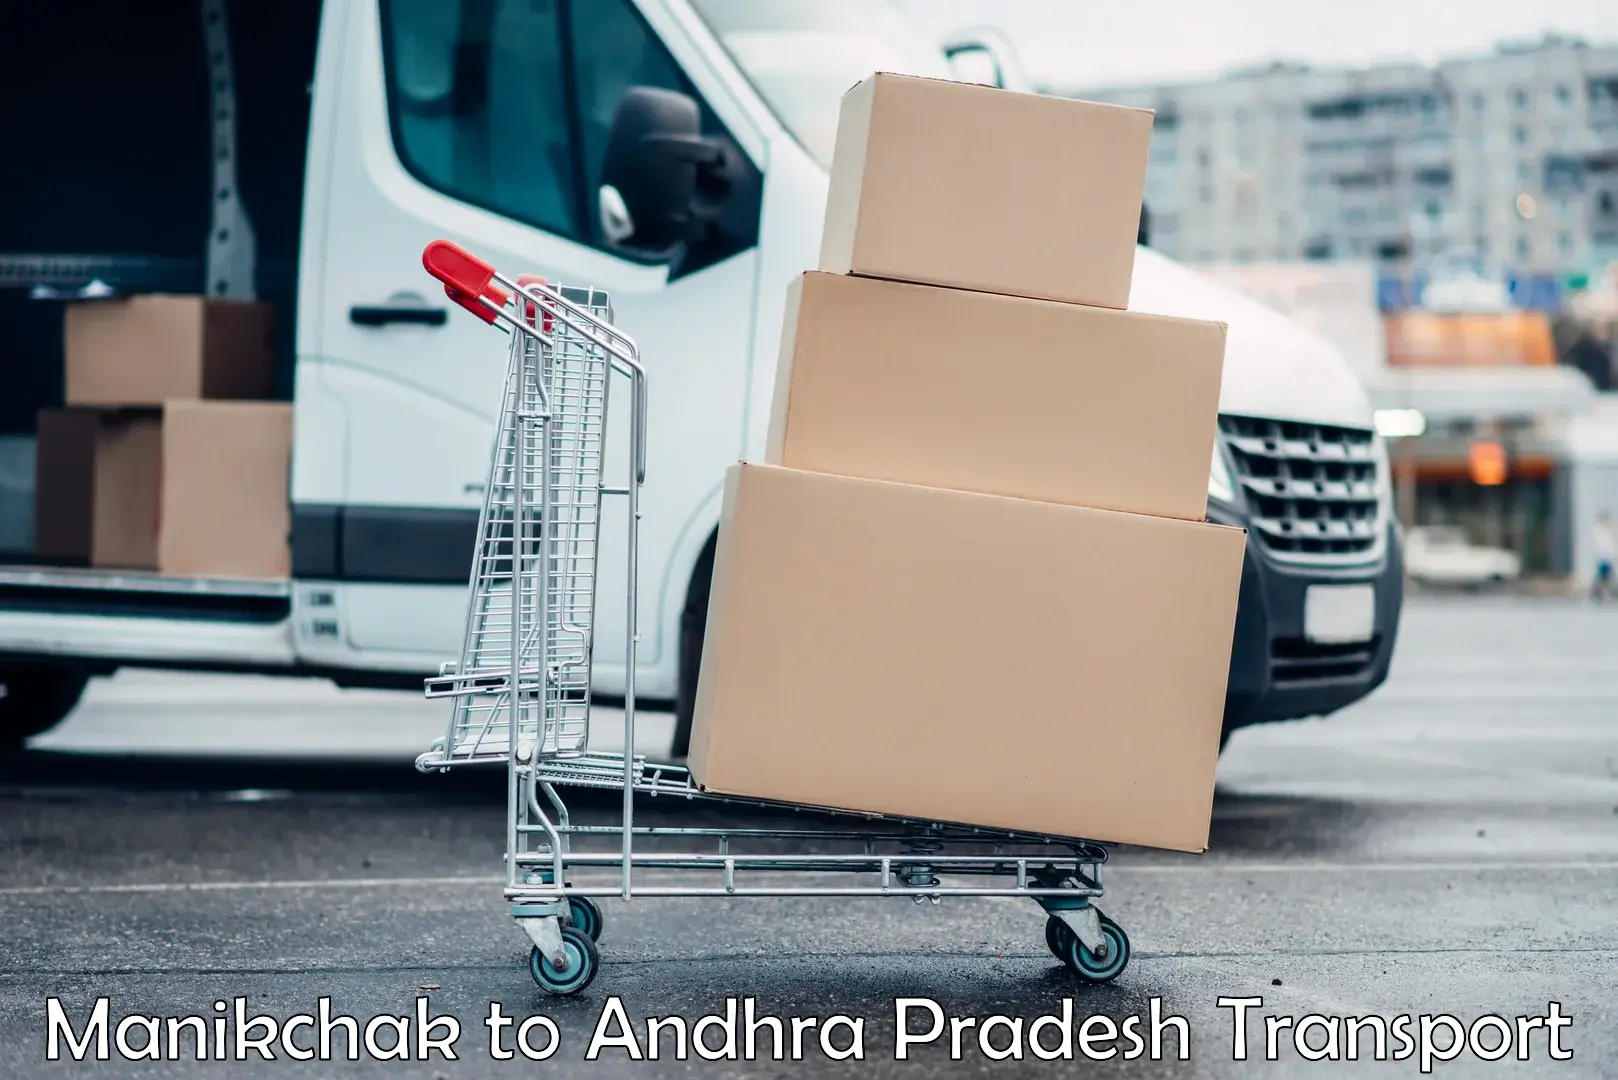 Pick up transport service Manikchak to Andhra Pradesh